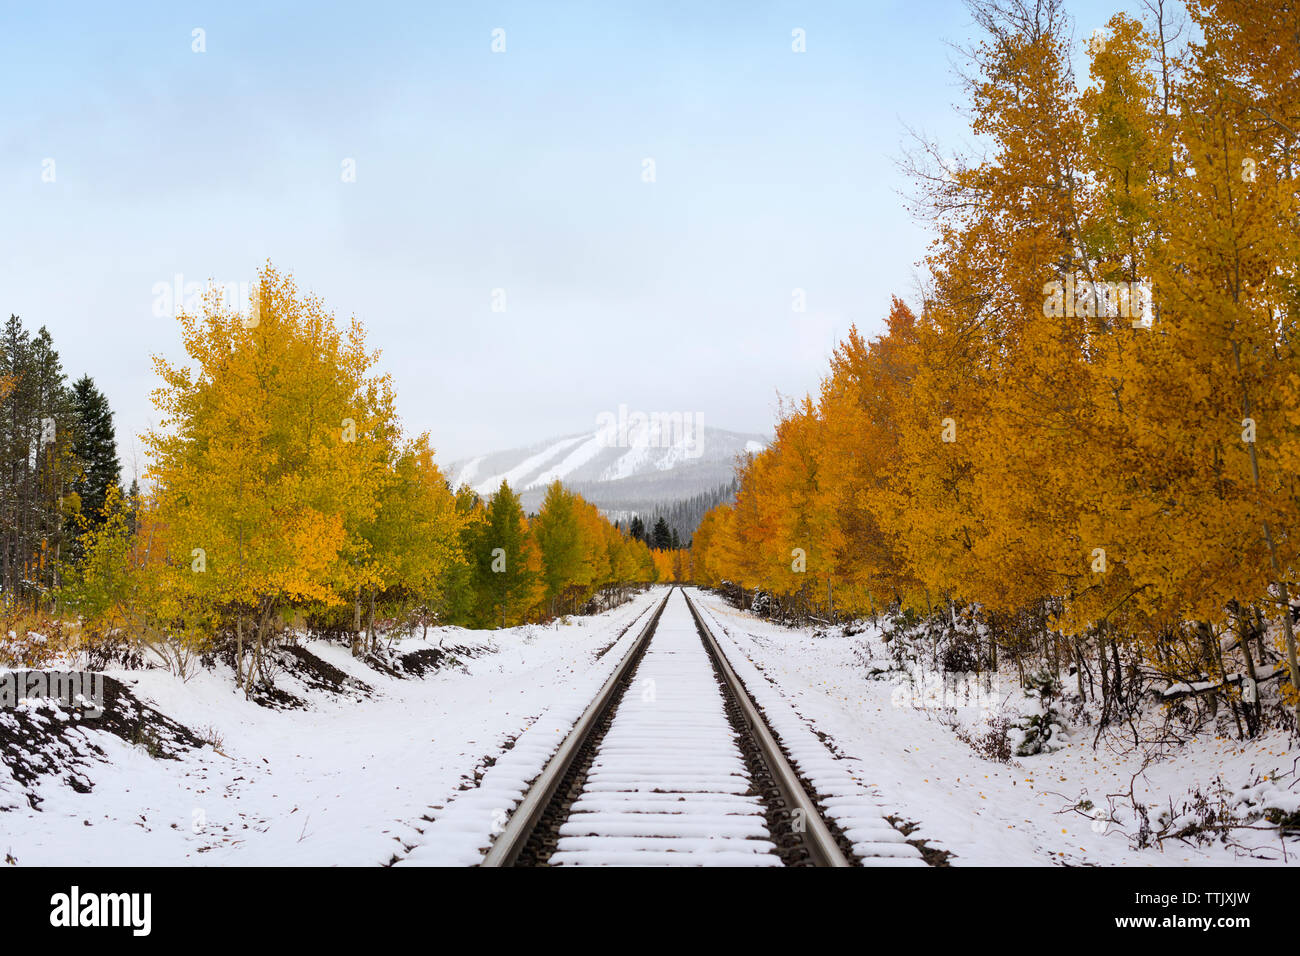 La neige sur la voie de chemin de fer au milieu d'arbres contre le ciel Banque D'Images